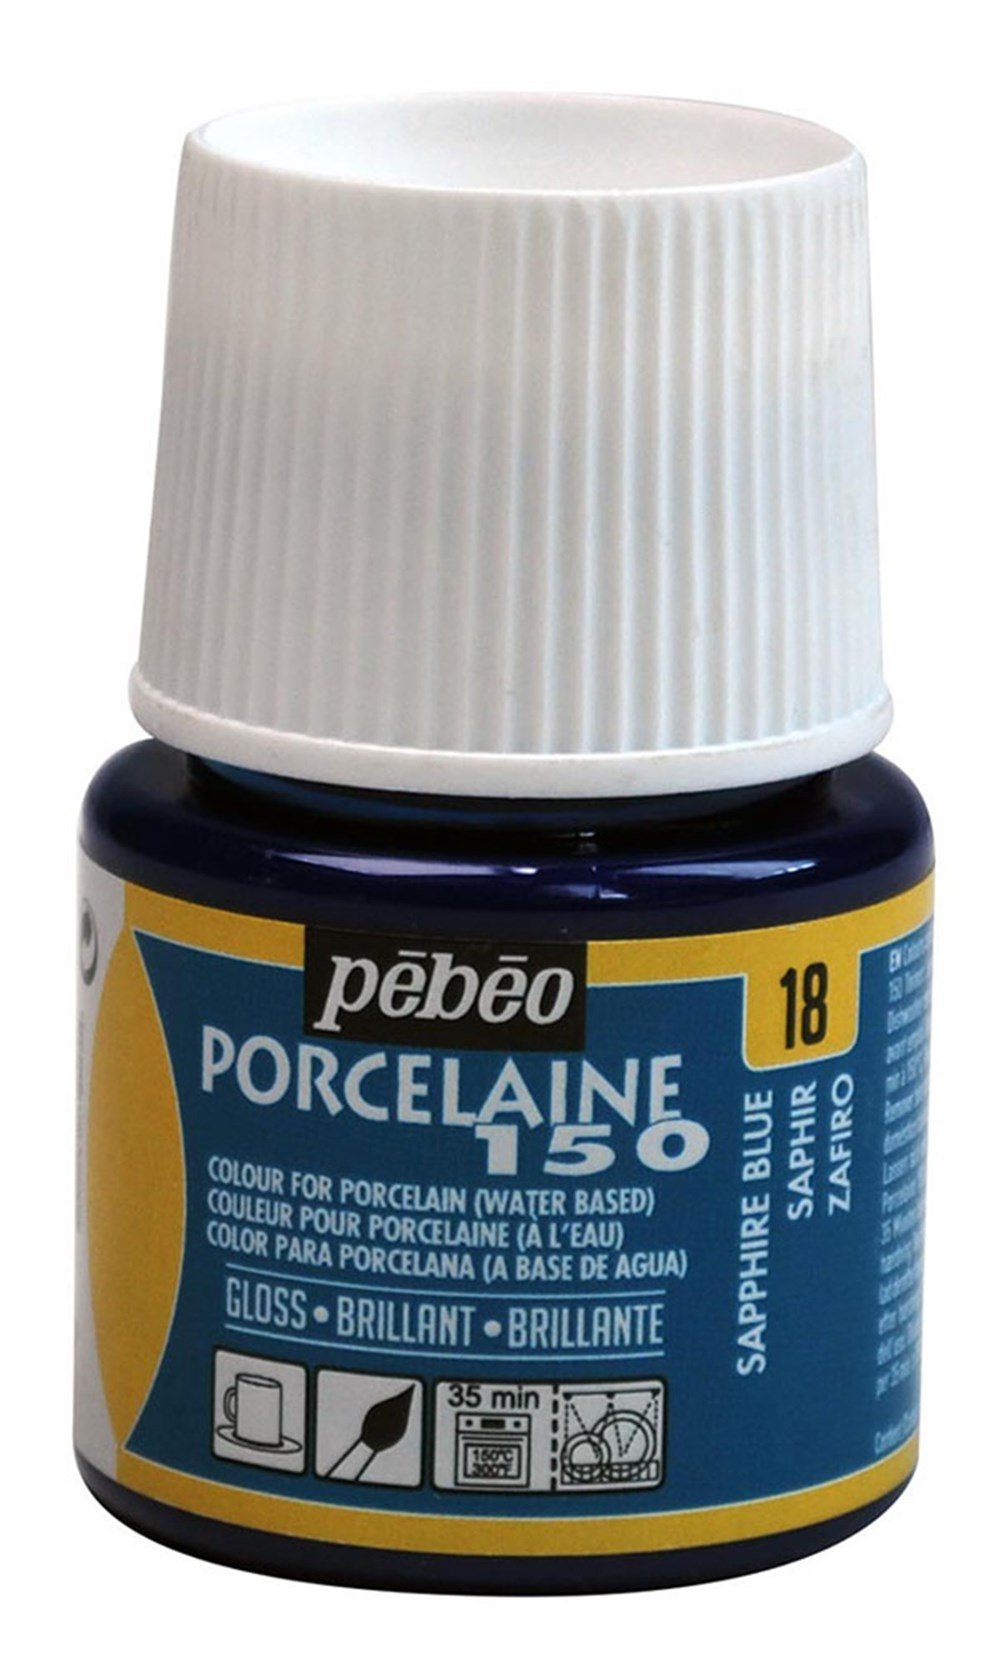 Pebeo Porcelaine 150 Fırınlanabilir Porselen Boyası 45 ml 18 Sapphire Blue  | Pebeo